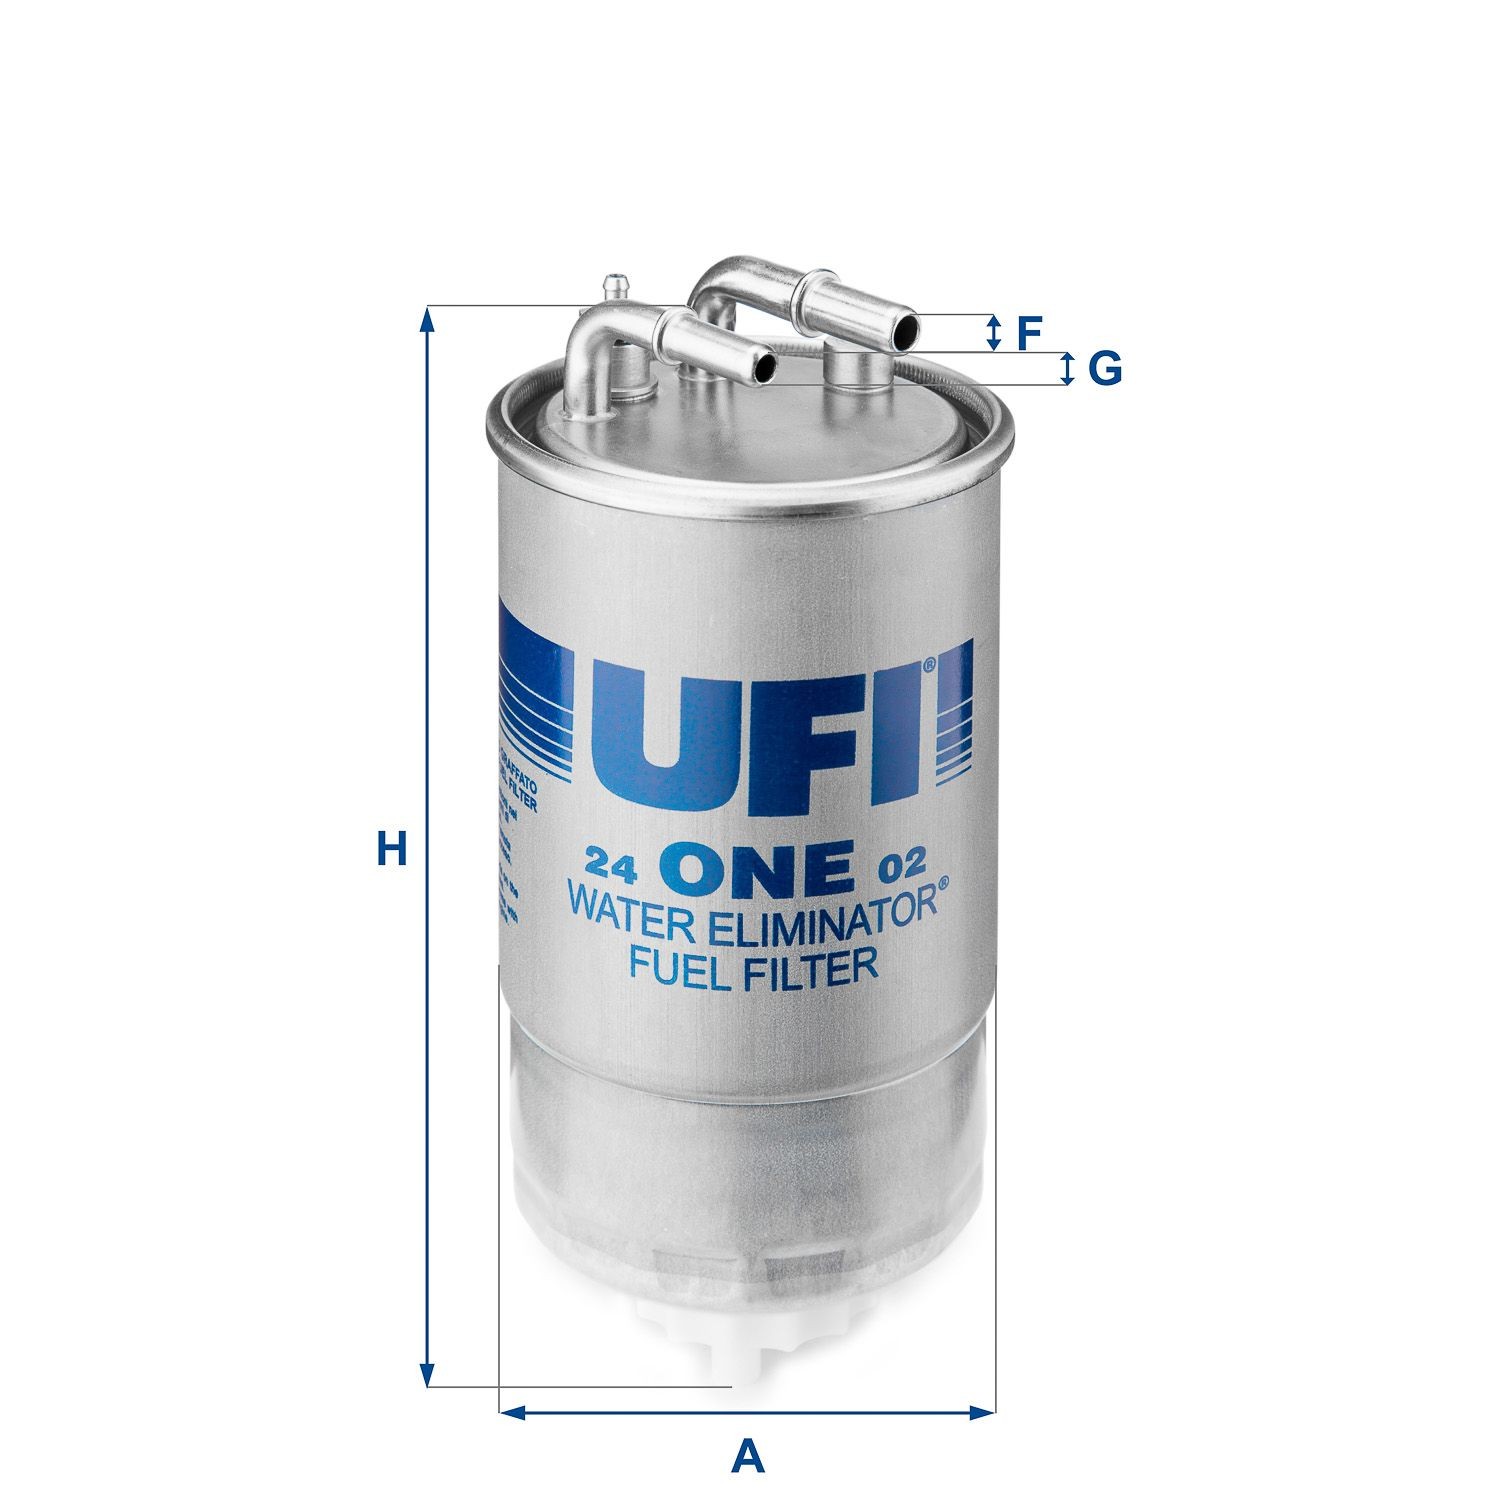 Filtro carburante UFI 24.ONE.02 - Filtro pezzi di ricambio comprare